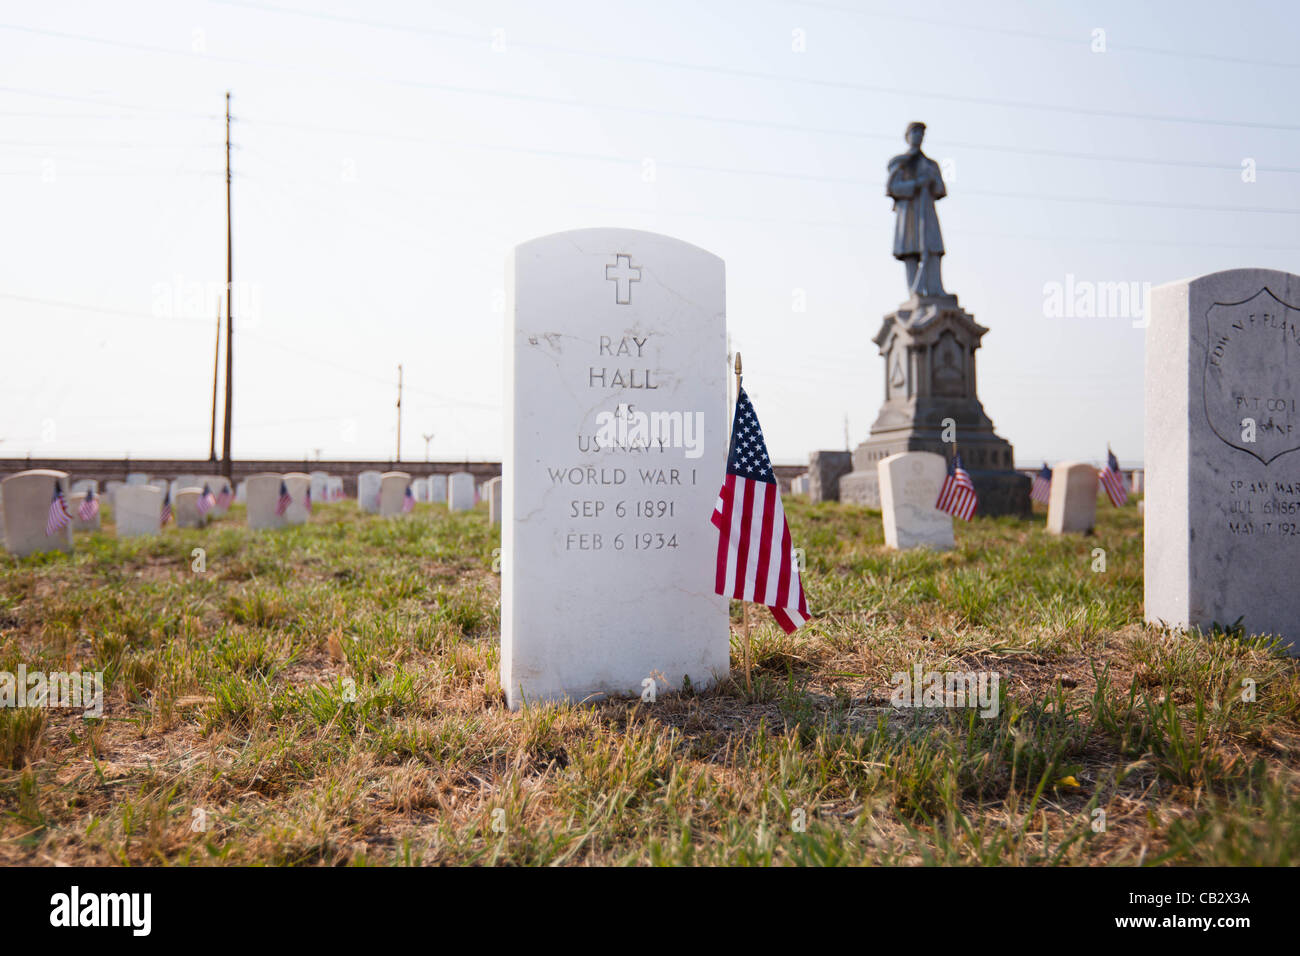 Fahnen schmücken den Kopf Steinen der Vereinigten Staaten Soldaten auf dem Riverside Cemetery in Denver, Colorado am 26. Mai 2012.  Studenten von der Ziel-Akademie-Charter-Schule platziert Fahnen in der Nähe der Grabsteine von Soldaten begraben auf dem Friedhof zu Ehren des Memorial Day. Stockfoto